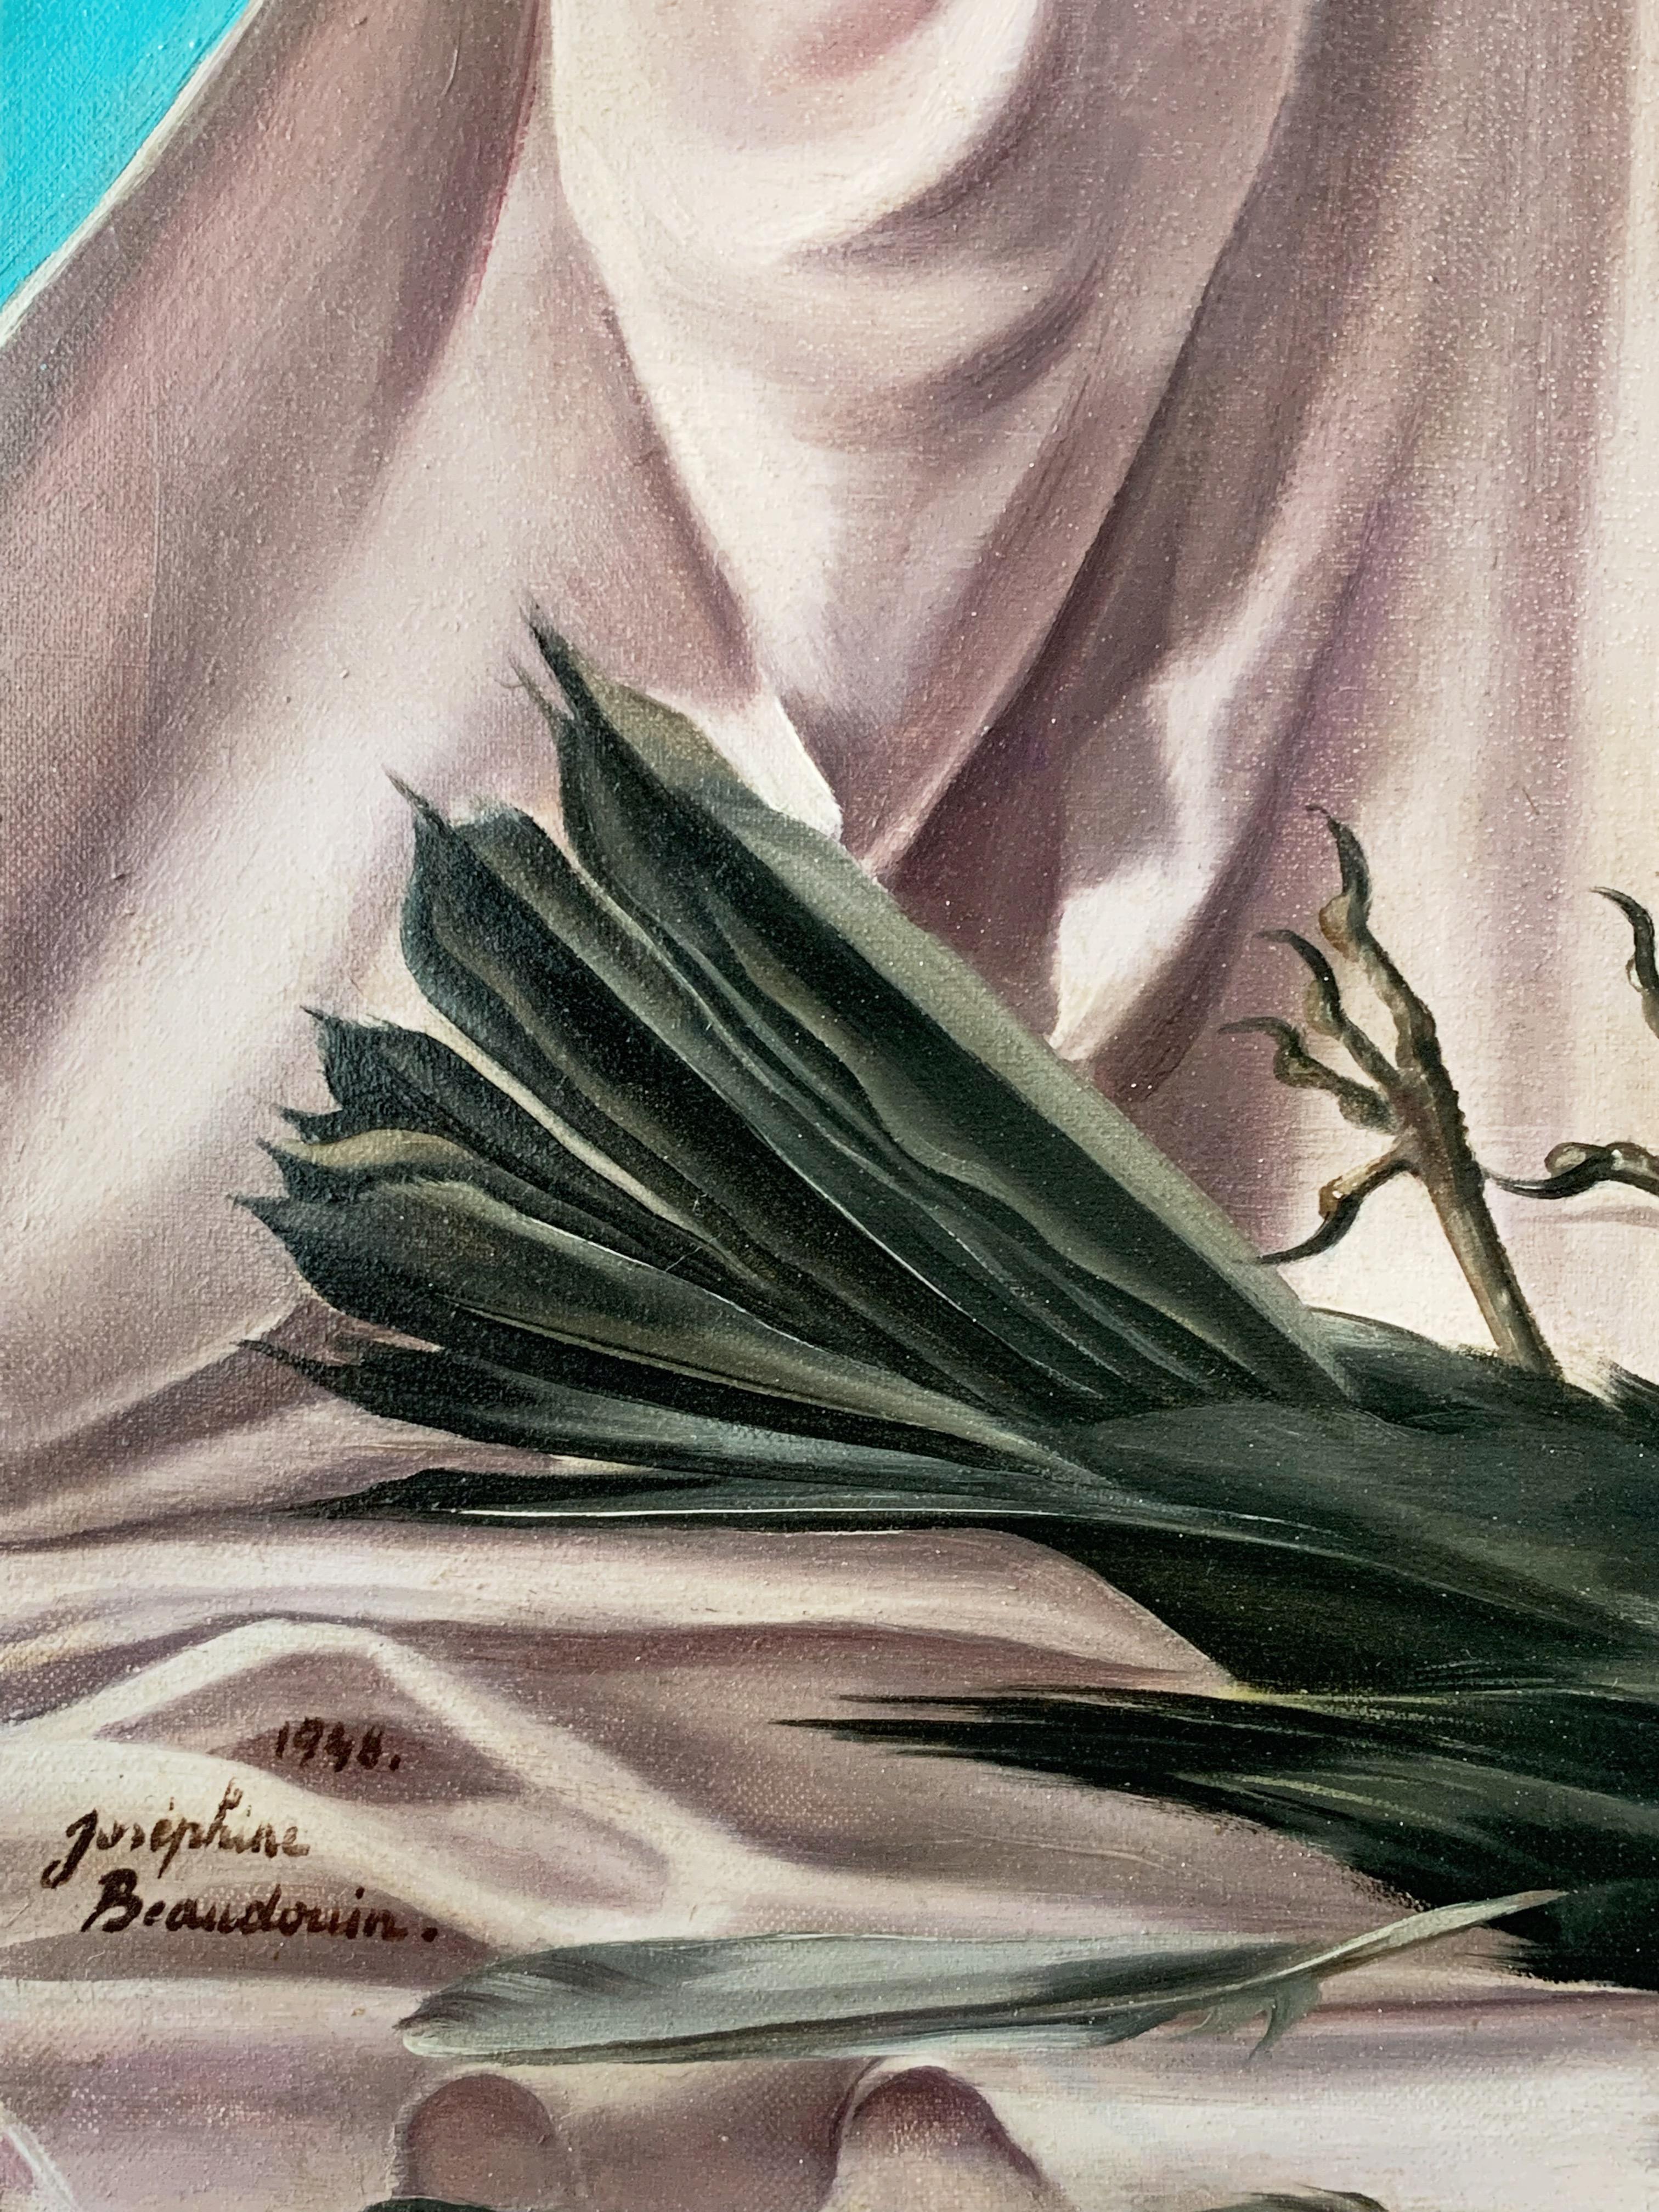 Joséphine Beaudouin (1909-2005)
Poésie de l'oiseau, peinture surréaliste, 1948
Huile sur toile
Signé 